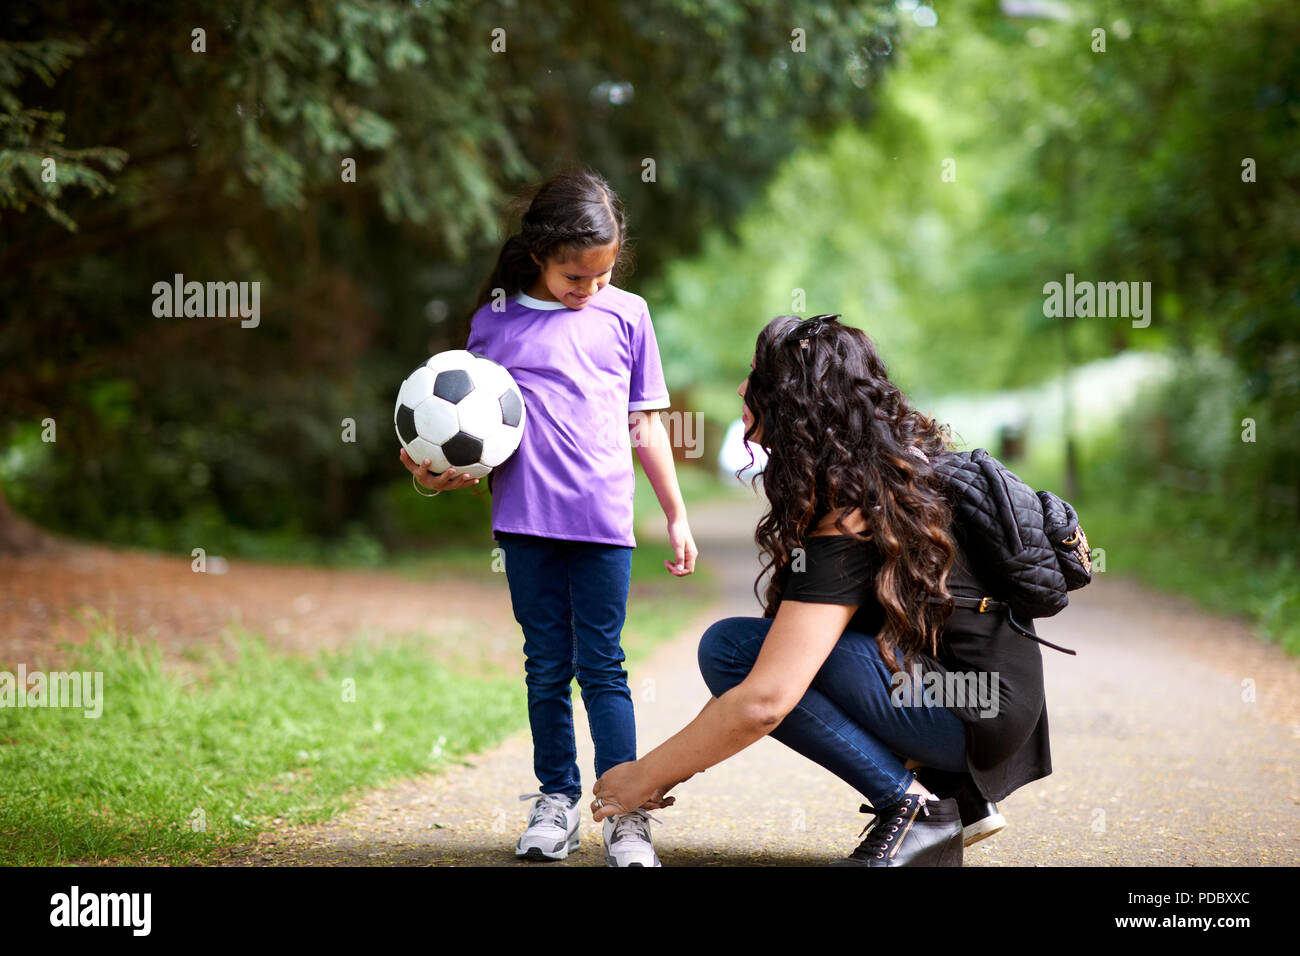 Attacher les lacets de fille mère holding soccer ball Banque D'Images